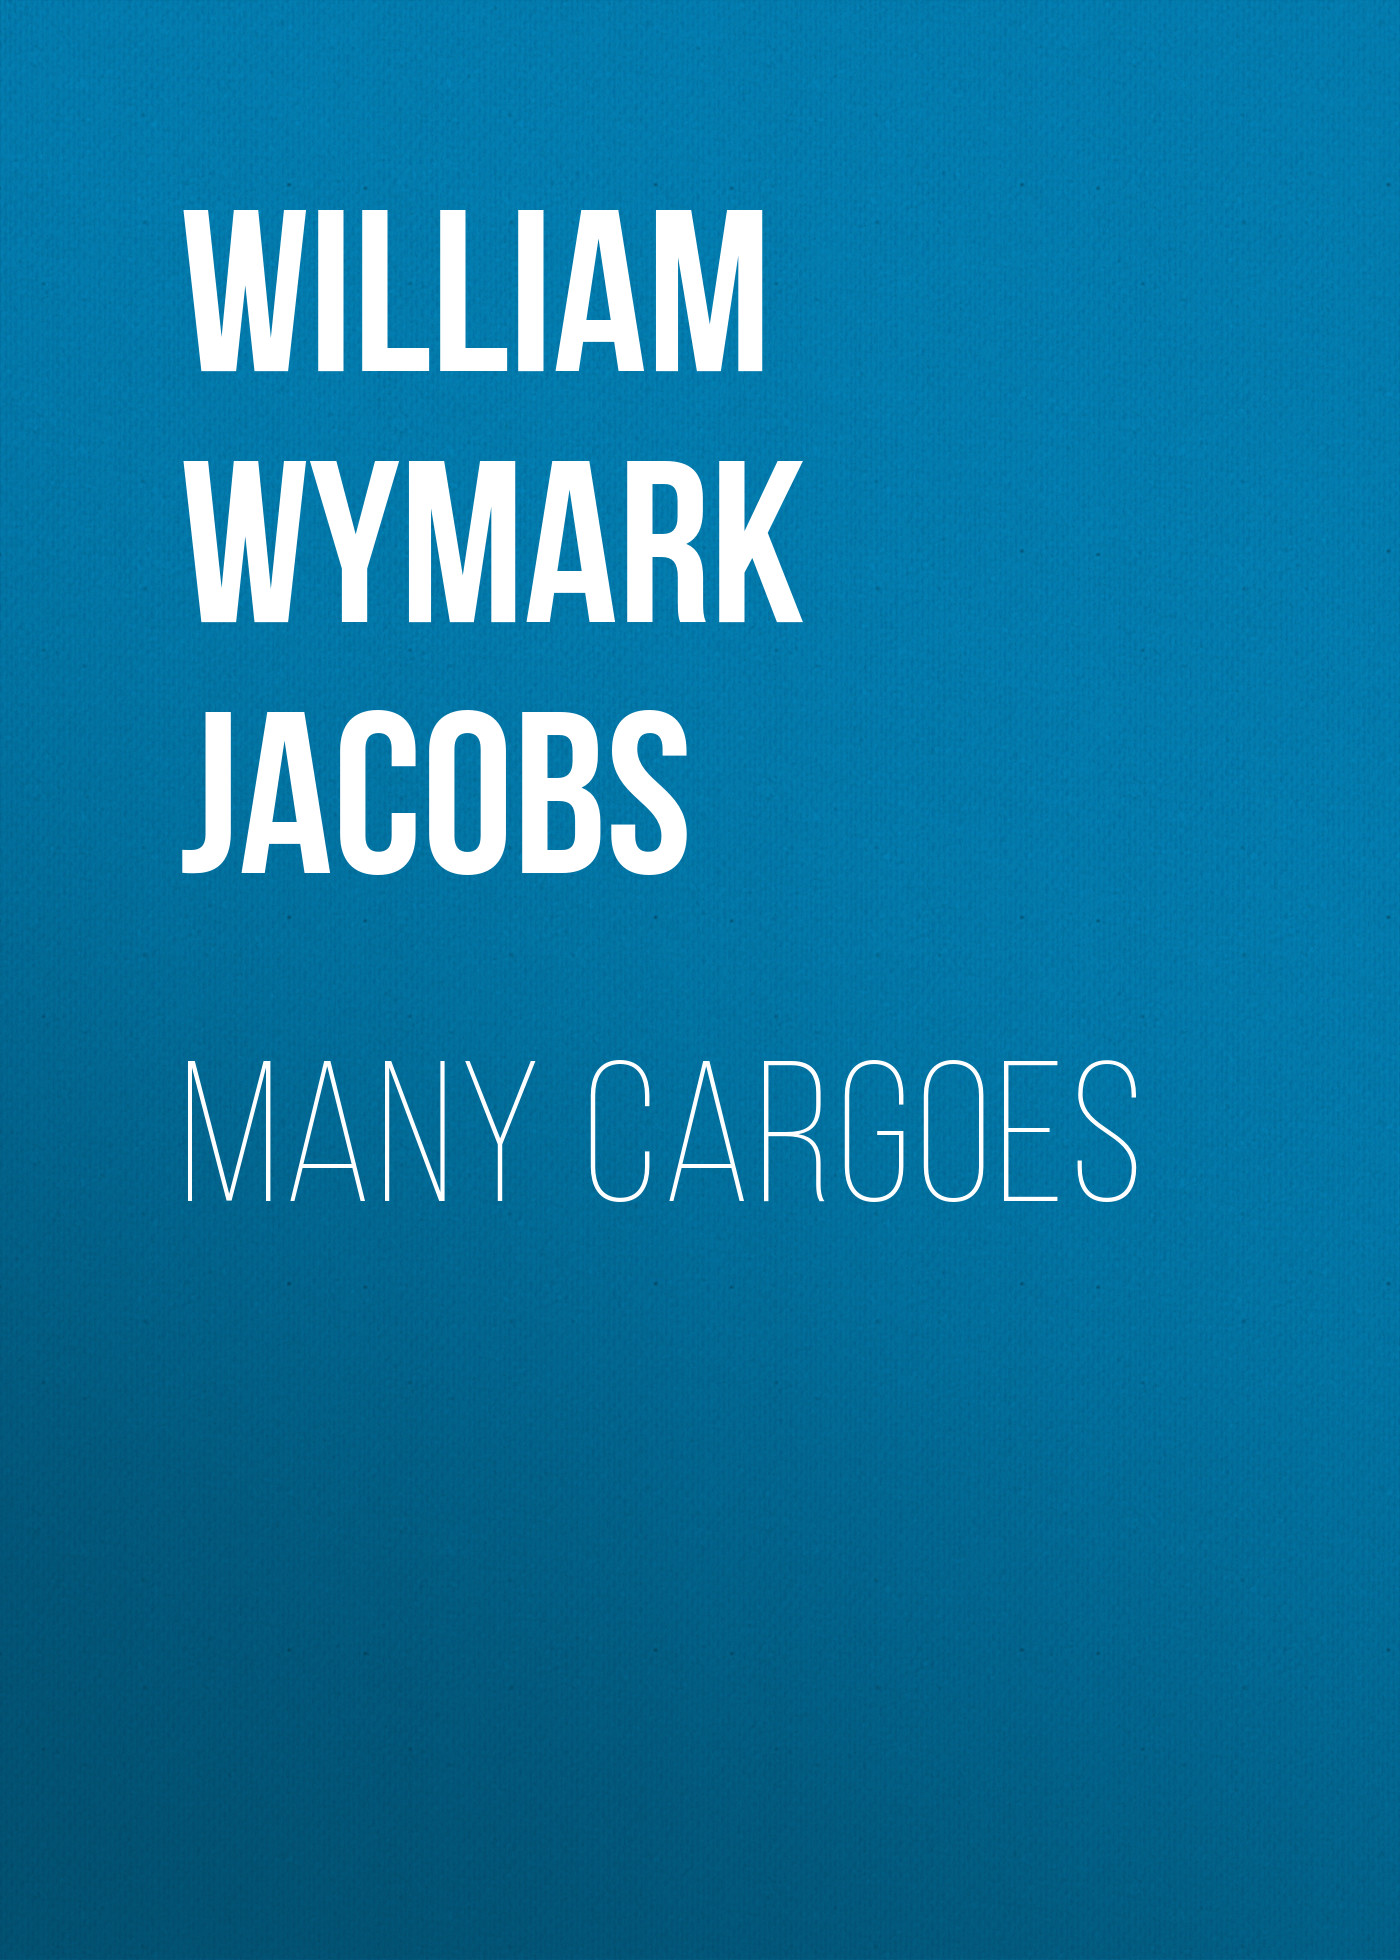 Книга Many Cargoes из серии , созданная William Wymark Jacobs, может относится к жанру Зарубежная классика, Зарубежная старинная литература. Стоимость электронной книги Many Cargoes с идентификатором 34842182 составляет 0 руб.